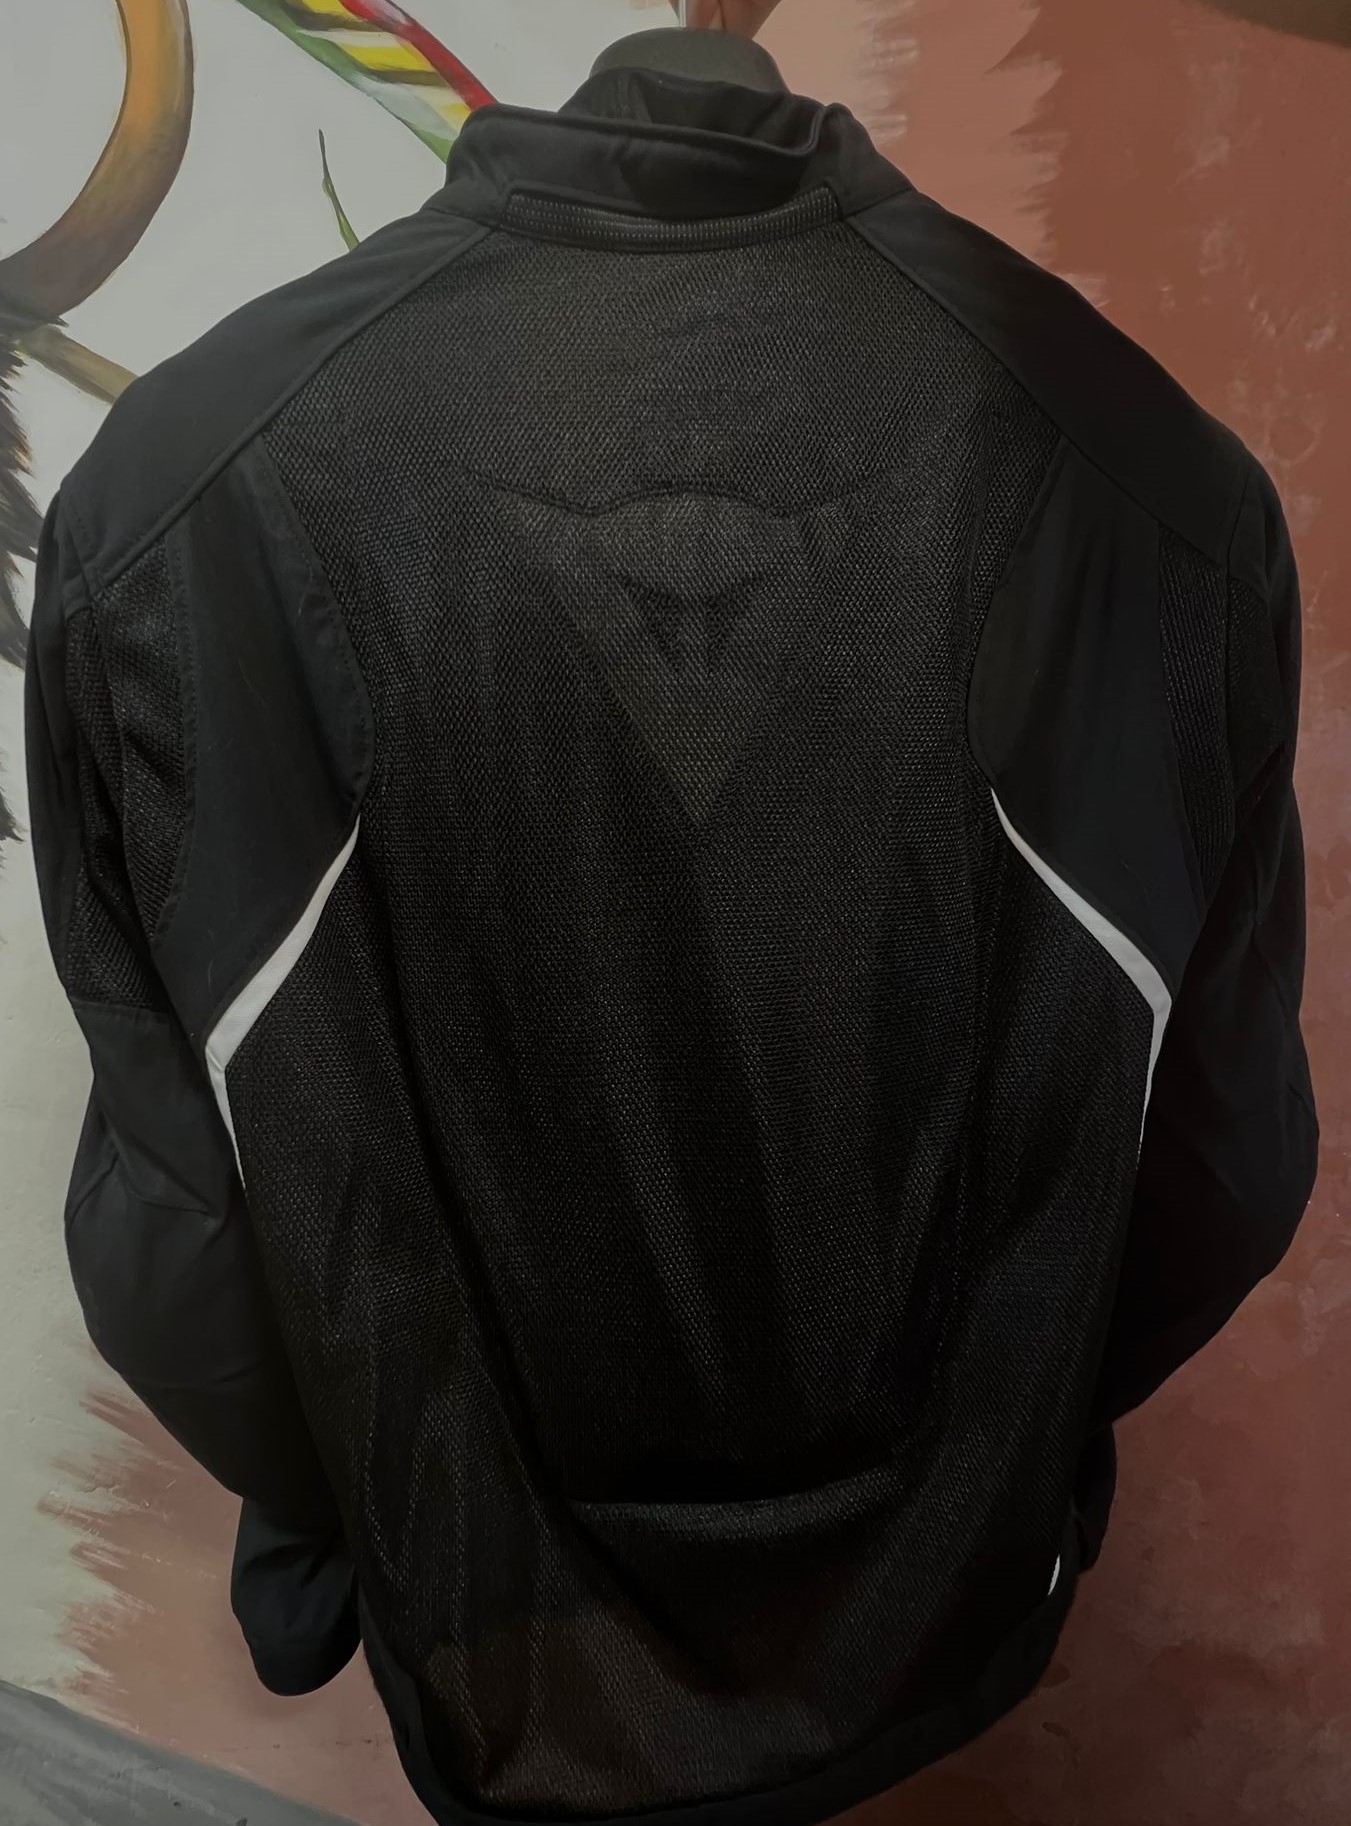 תמונה 2 ,dainese jacket אביזרים דו גלגלי אביזרי לבוש ומיגון